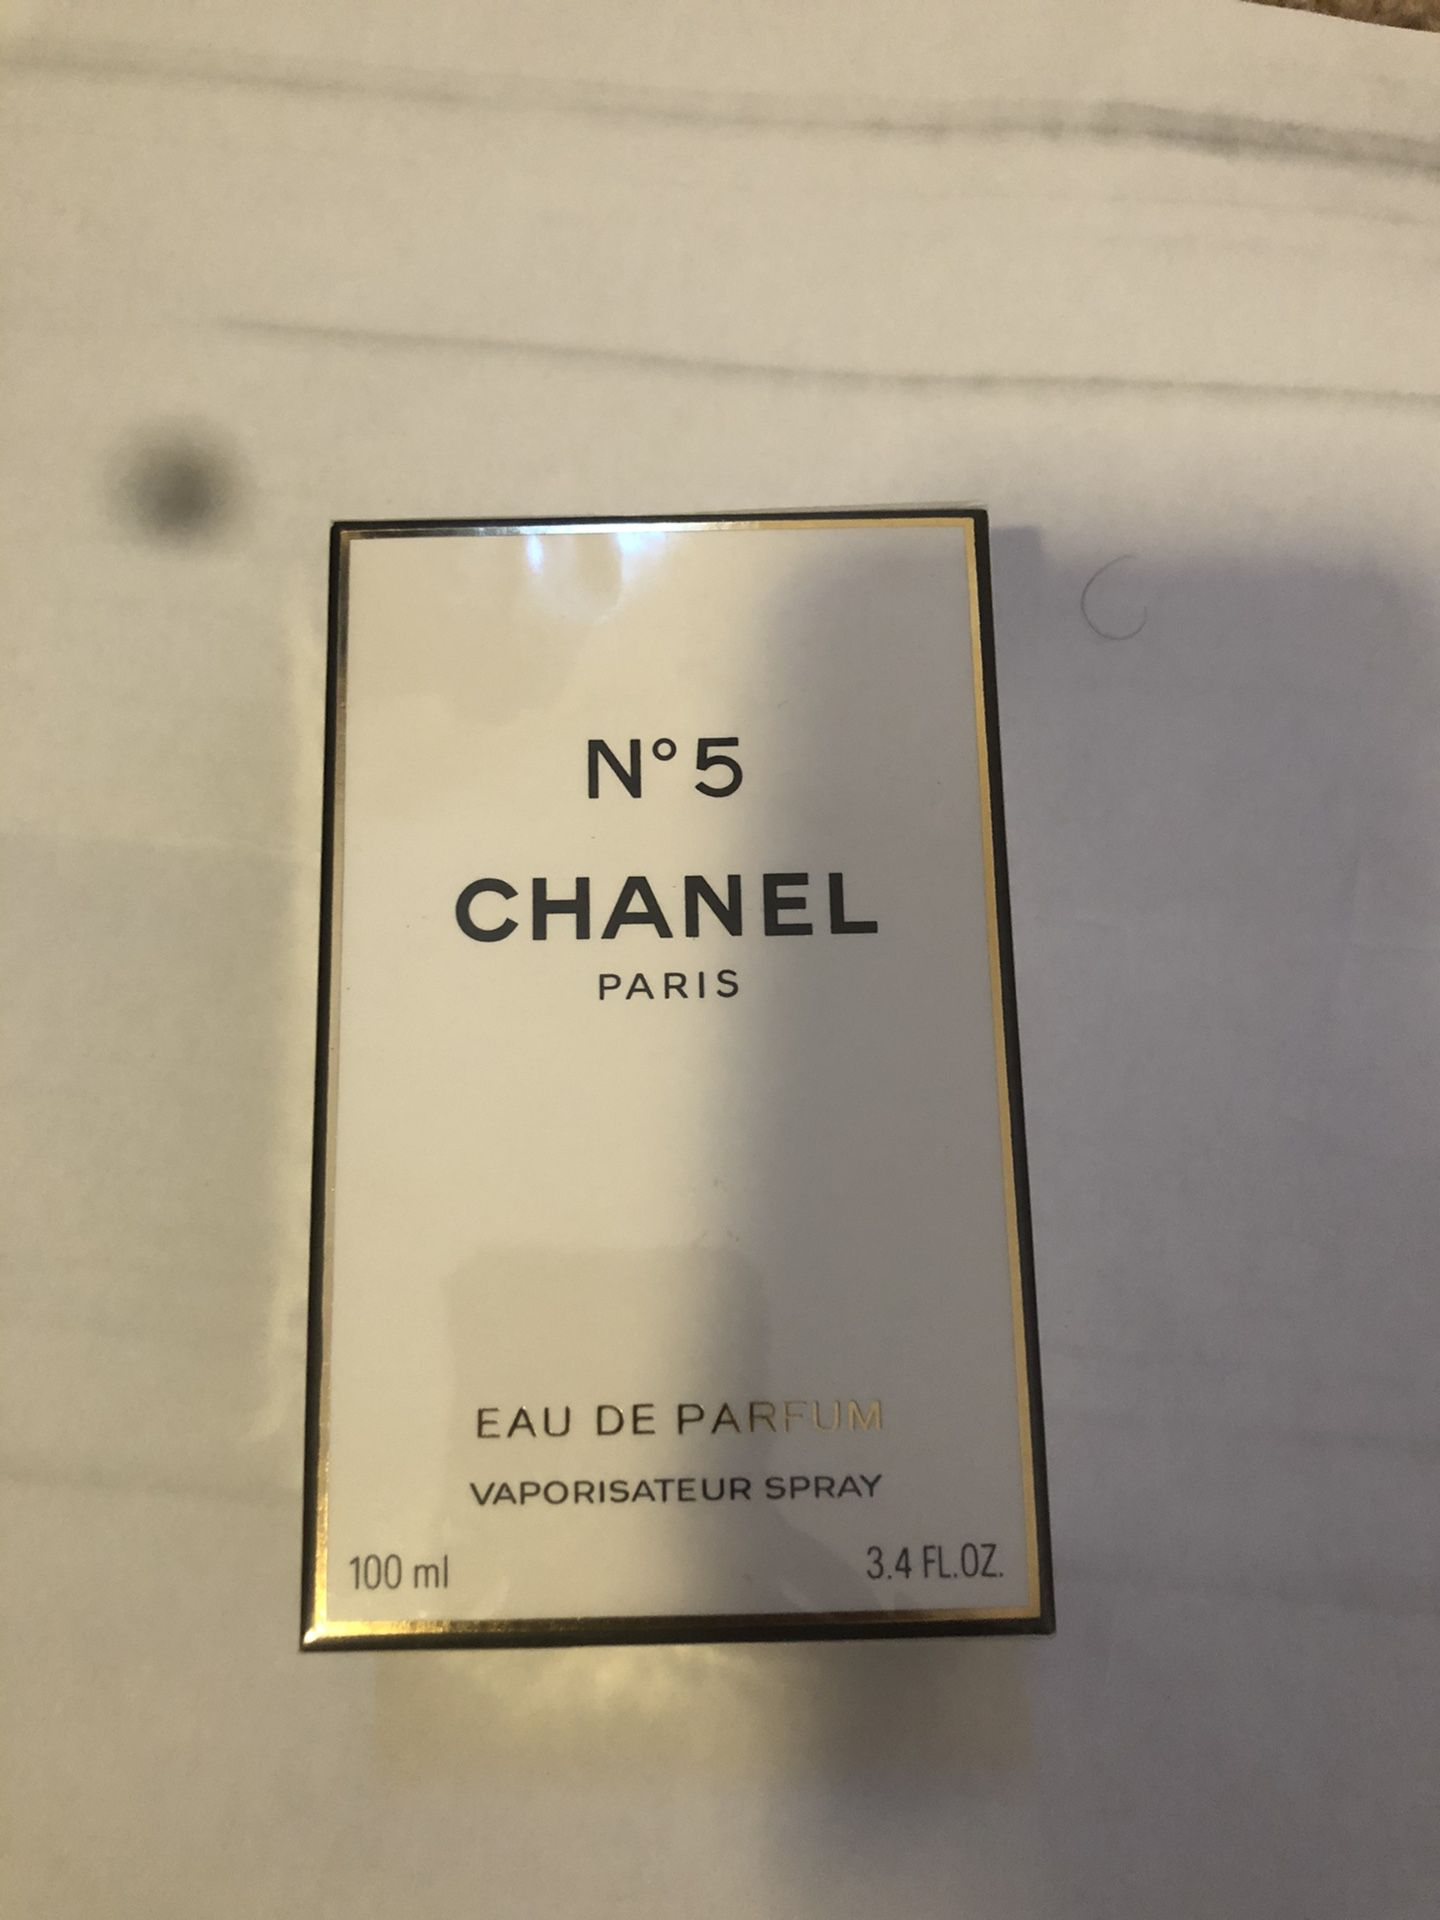 Chanel NO.5 EAU DE PARFUM for Sale in Charlotte, NC - OfferUp